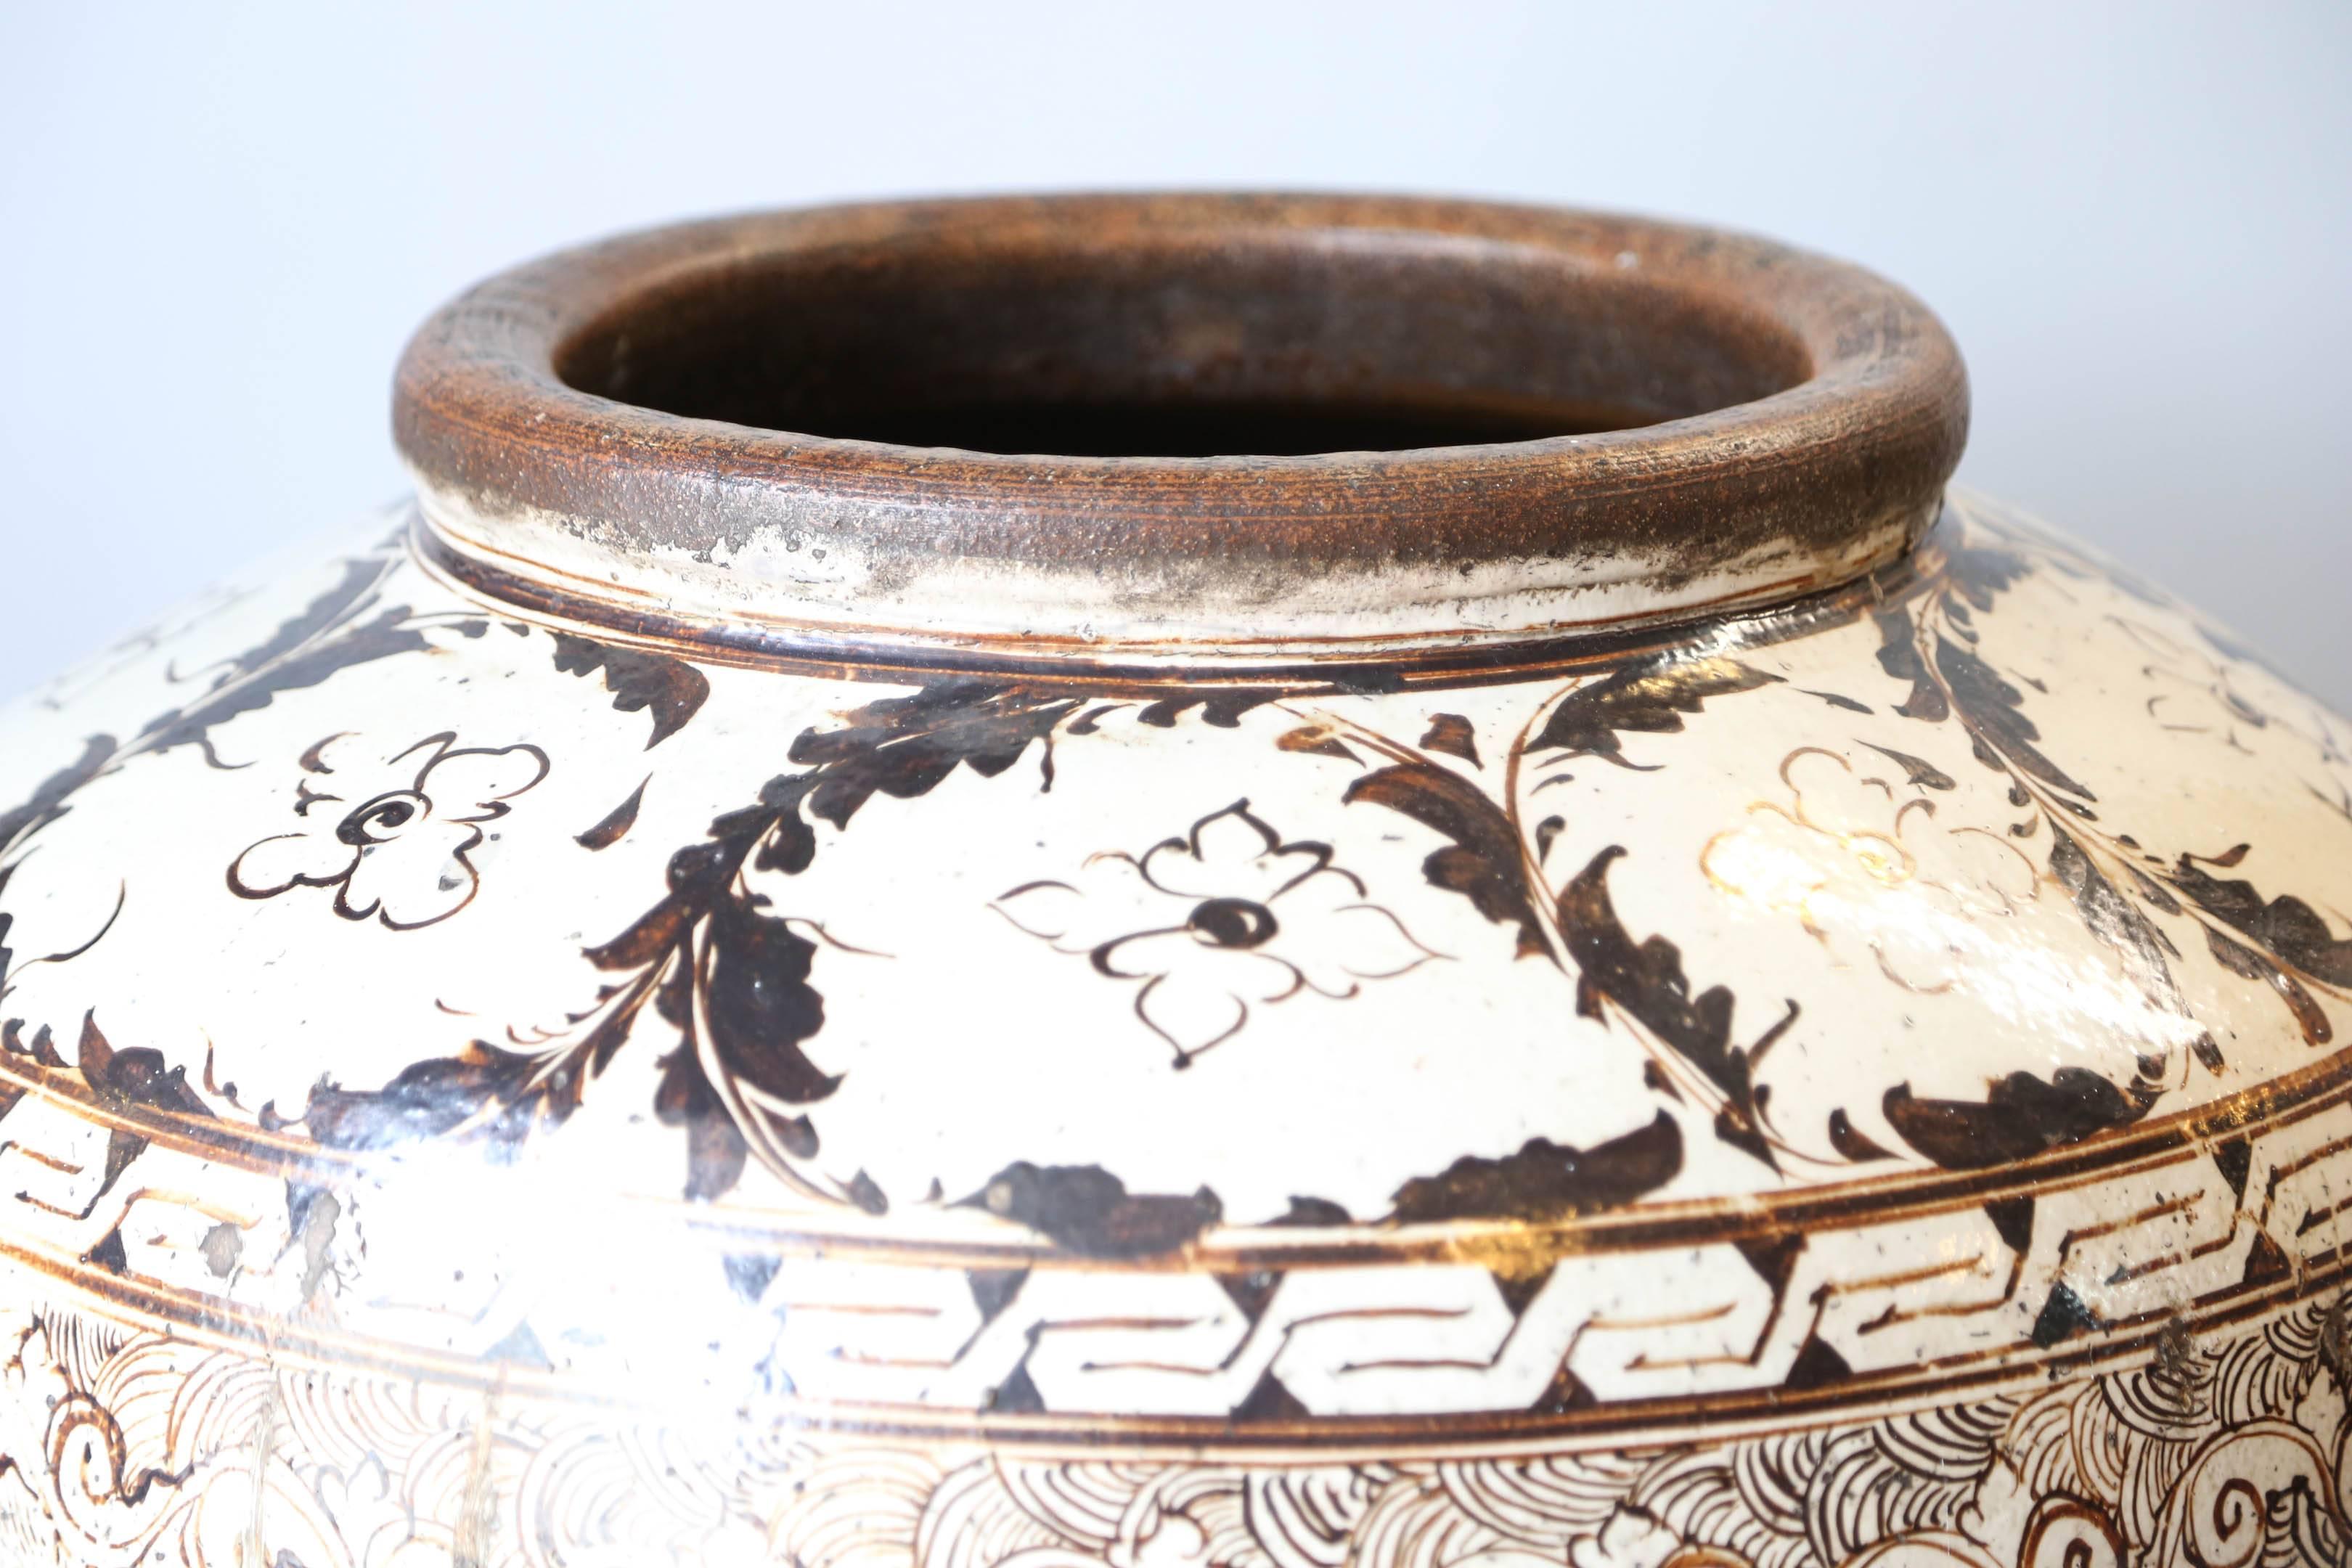 cizhou pottery